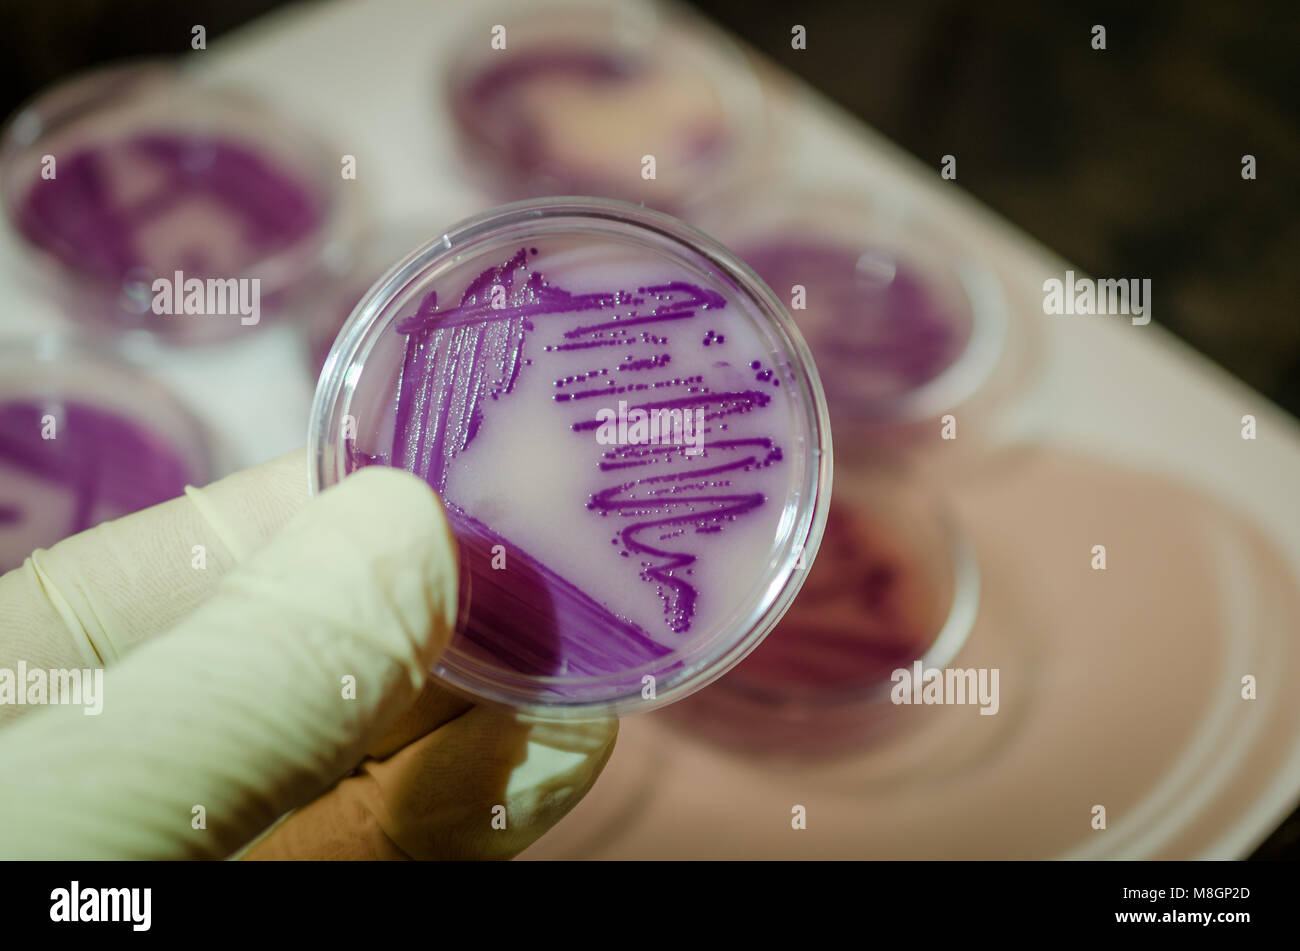 Coltura batterica immagini e fotografie stock ad alta risoluzione - Alamy